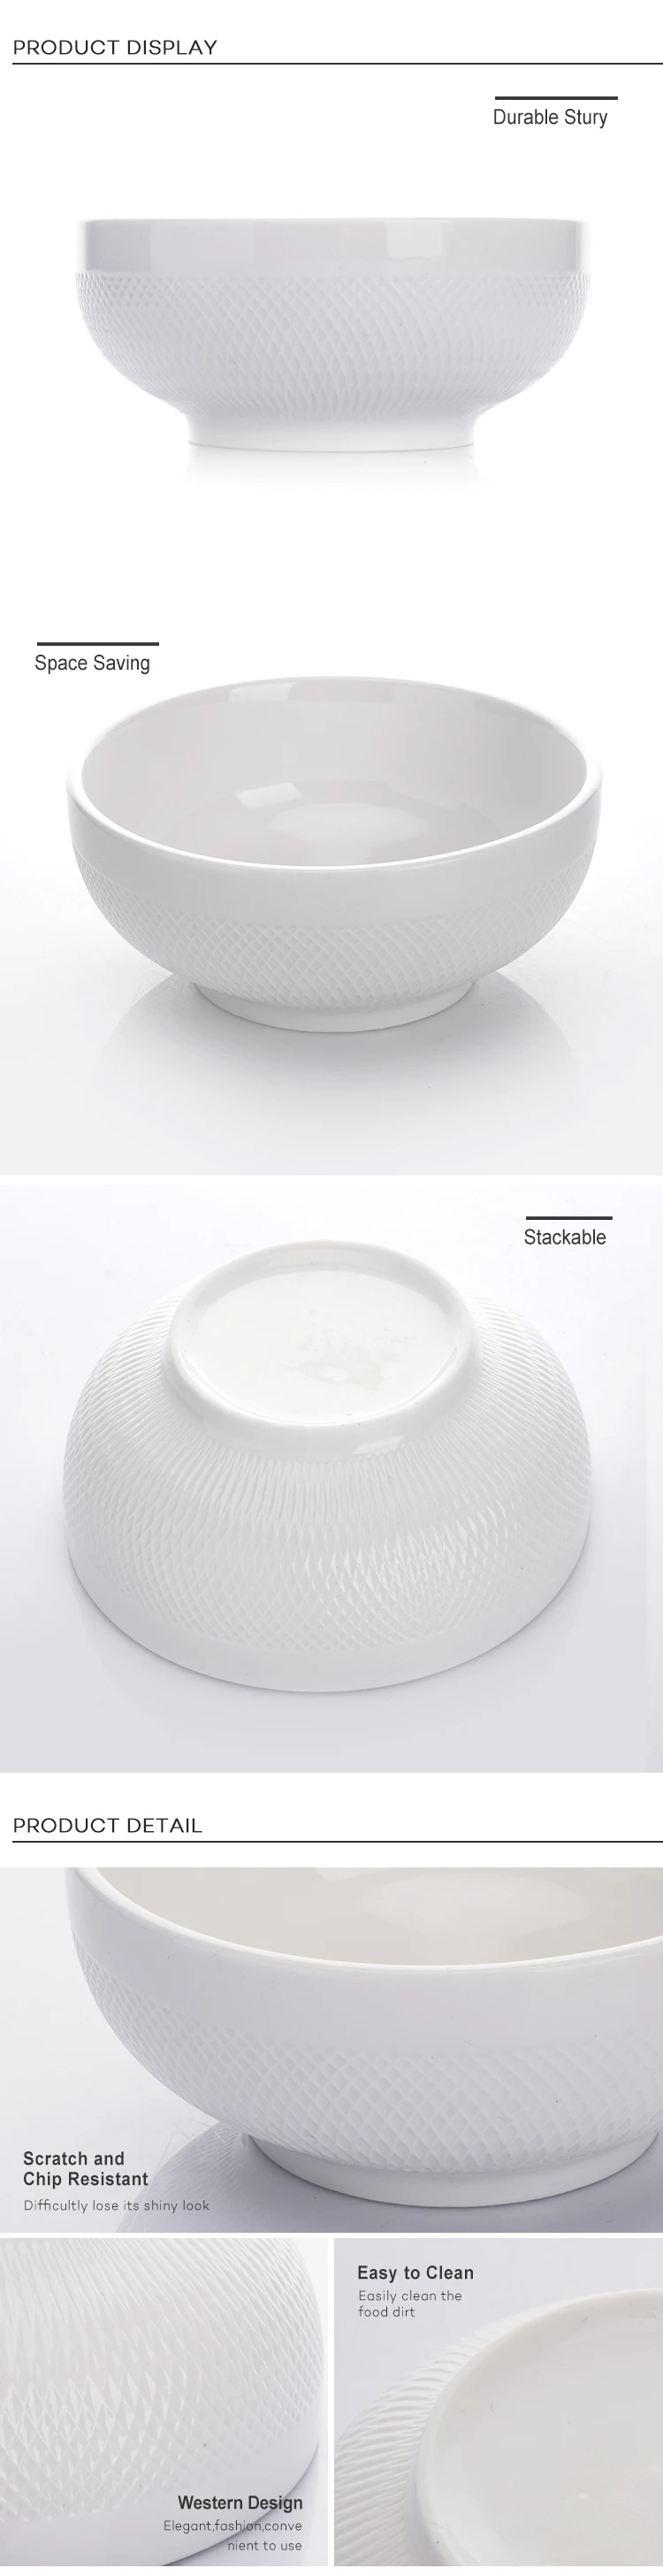 Ceramic Dinner Porcelain Round Bowl,Porcelain Salad White Bowl,The Dinner Bowl for Restaurant or Hotel